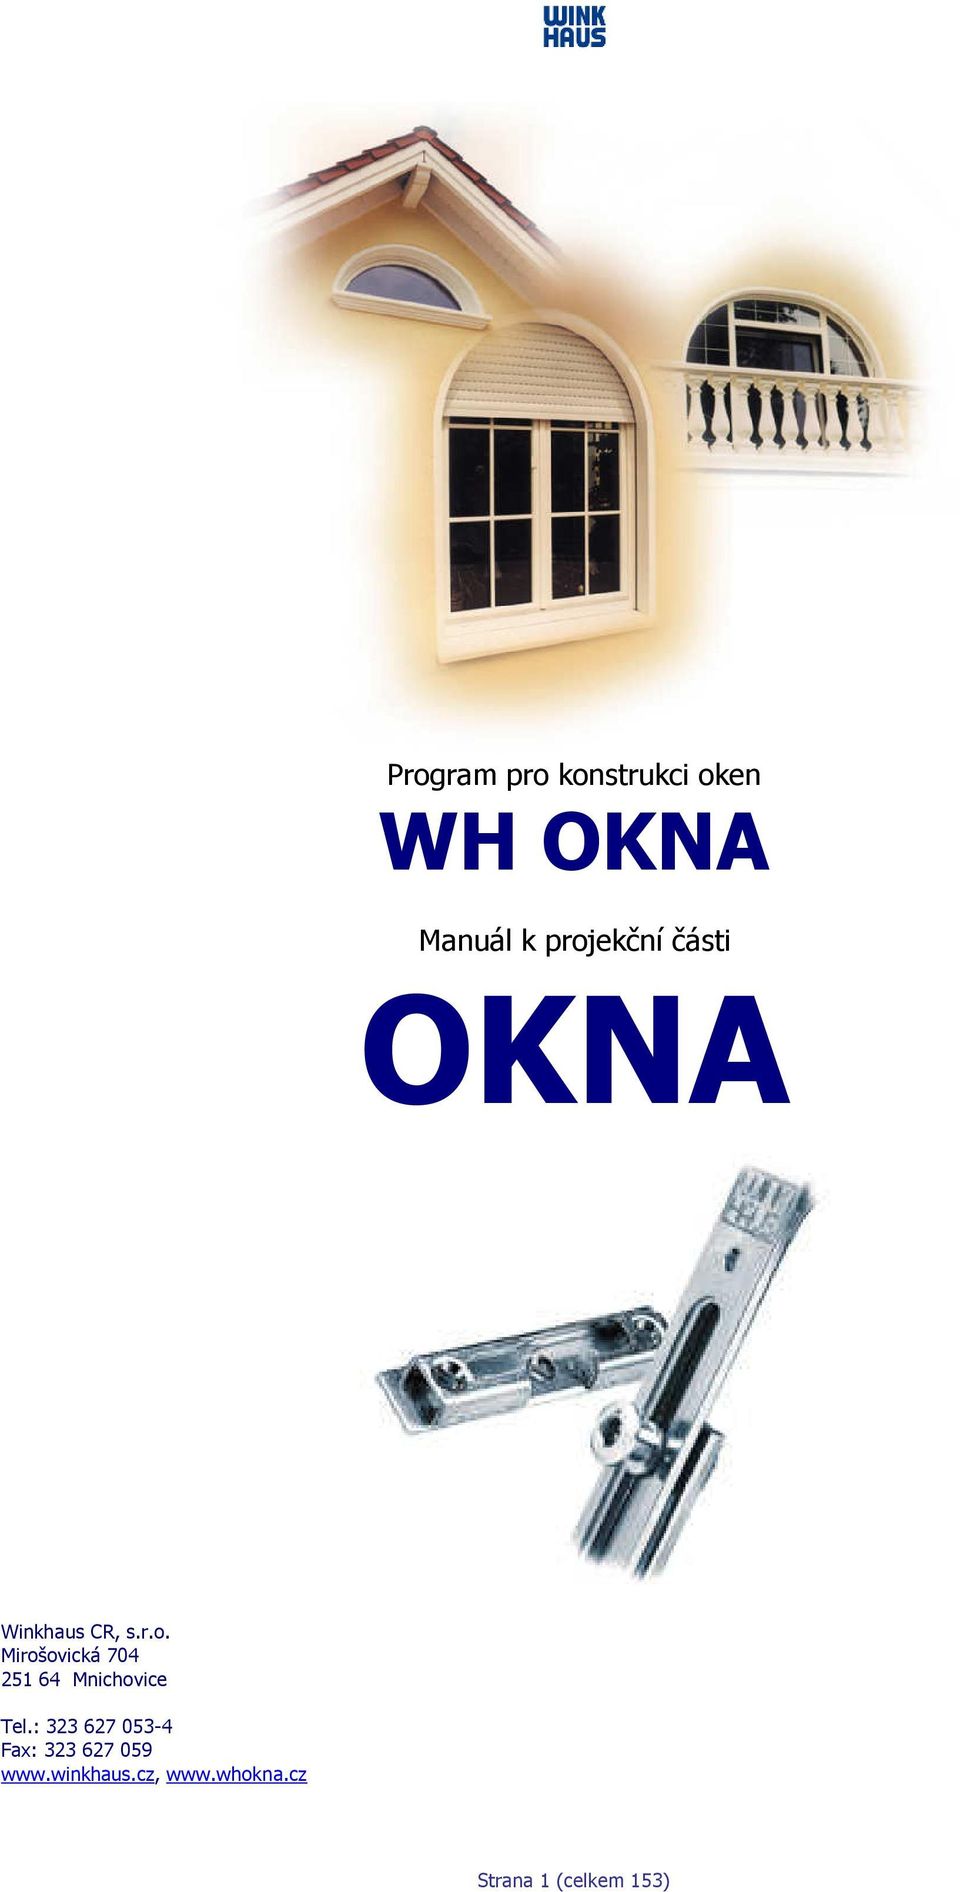 OKNA WH OKNA. Program pro konstrukci oken. Manuál k projekční části.  Winkhaus CR, s.r.o. Mirošovická Mnichovice - PDF Stažení zdarma